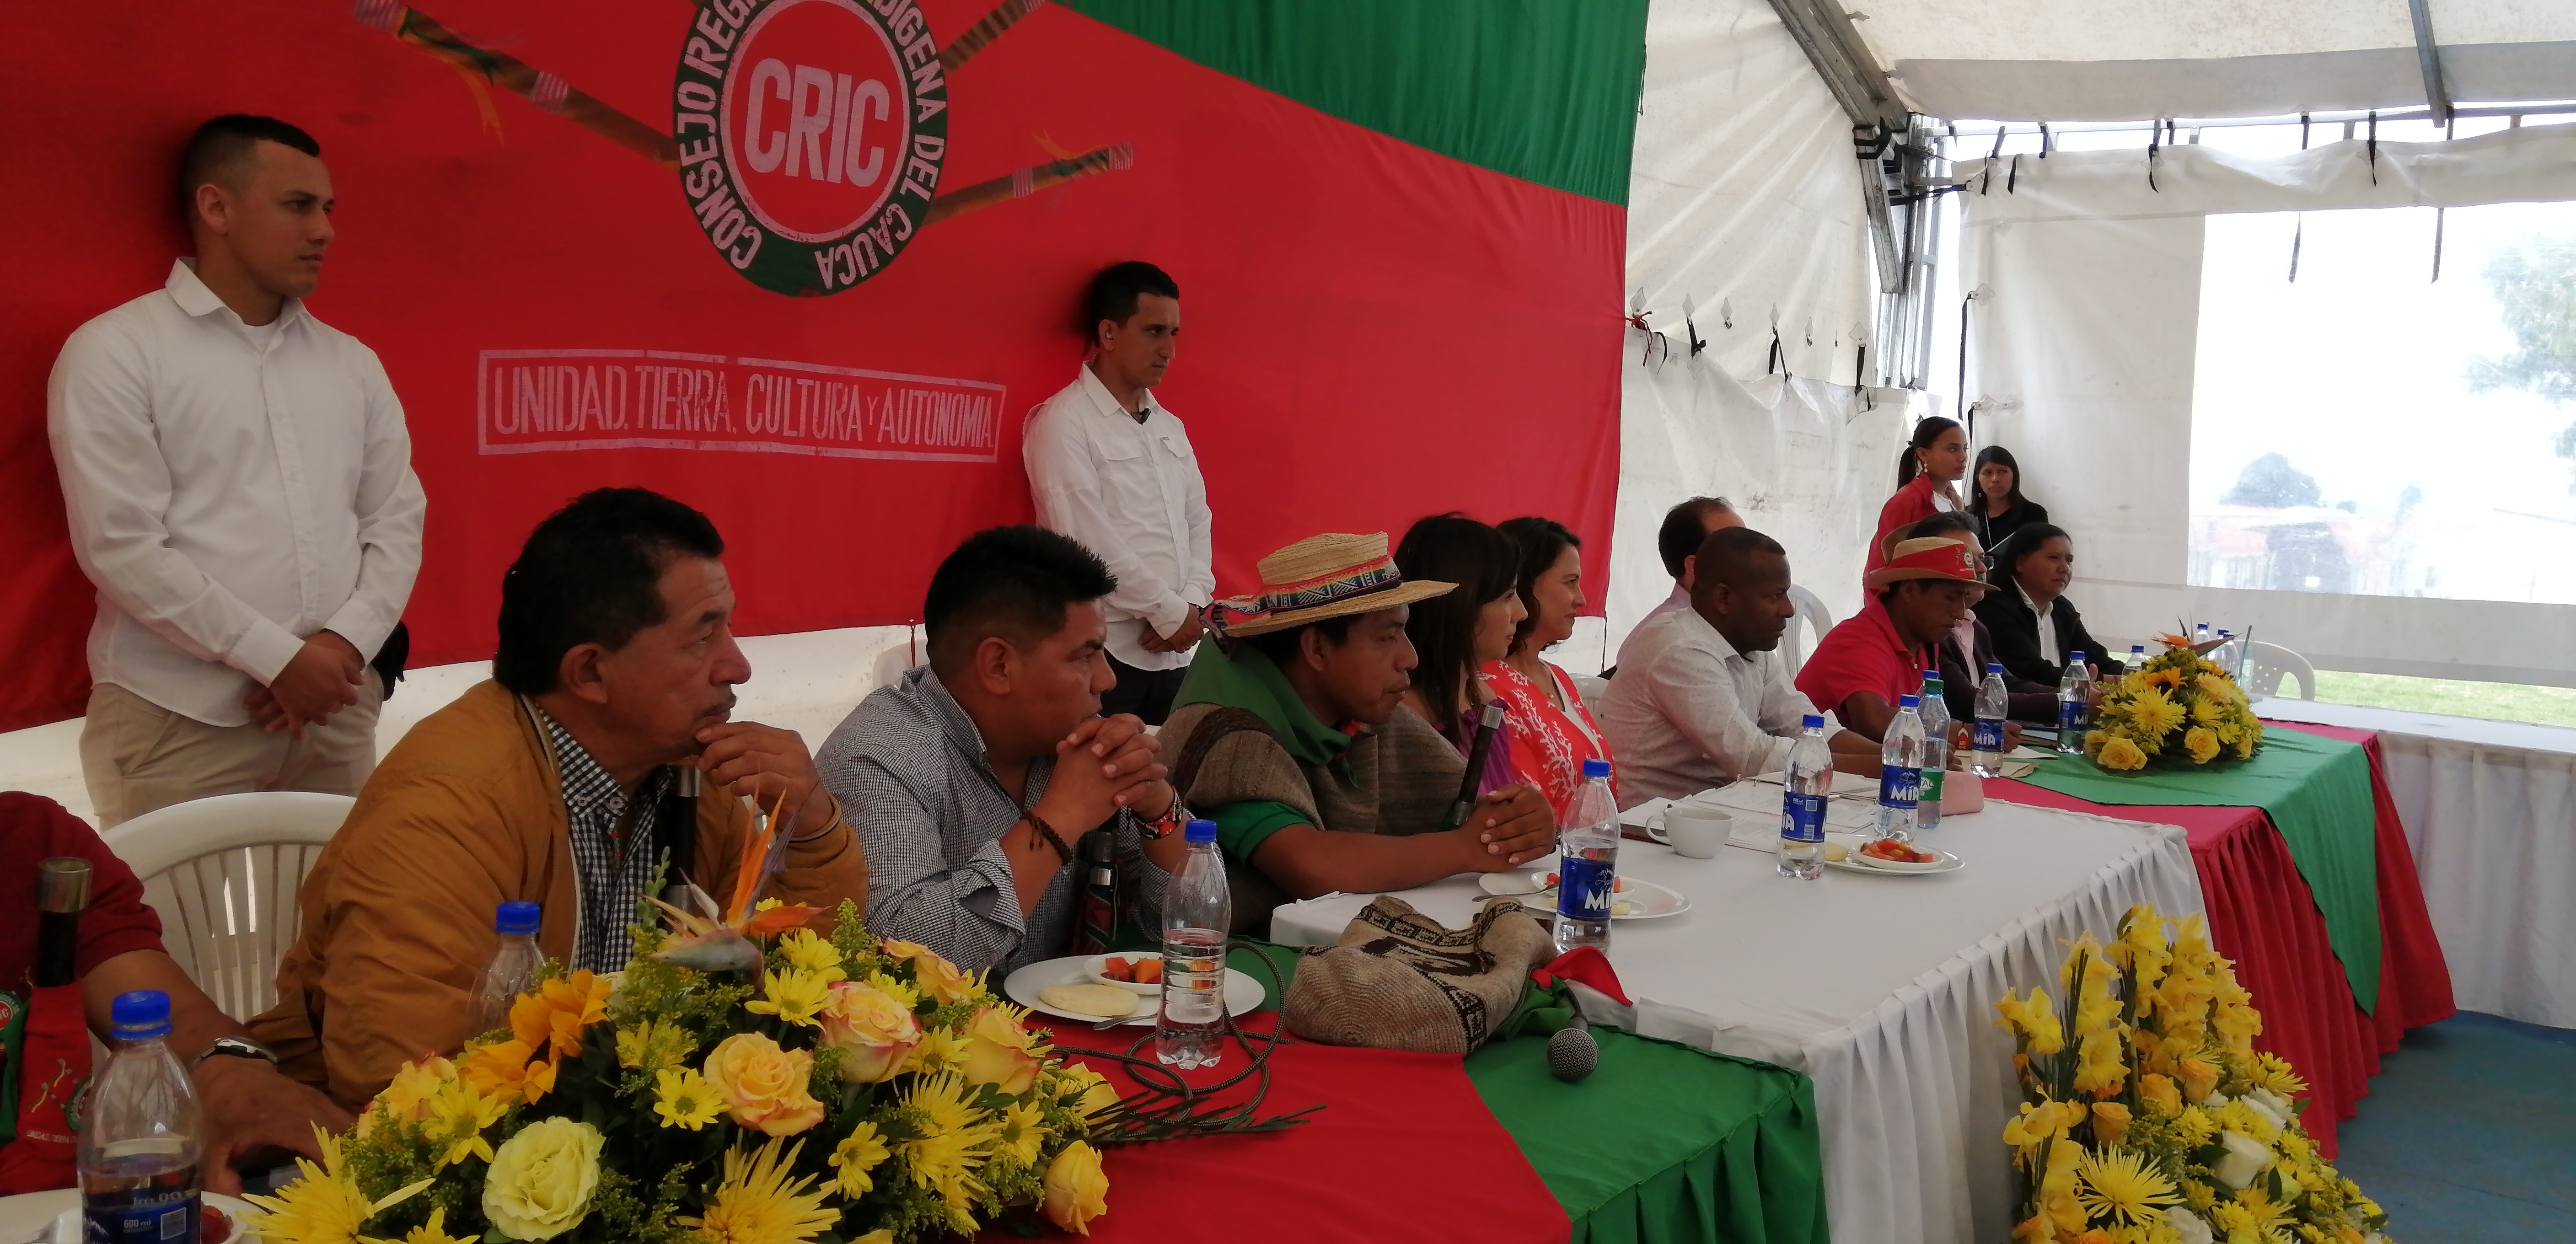 La UAIIN continúa trabajando hacia la consolidación de una educación propia | Consejo Regional Indígena del Cauca - CRIC